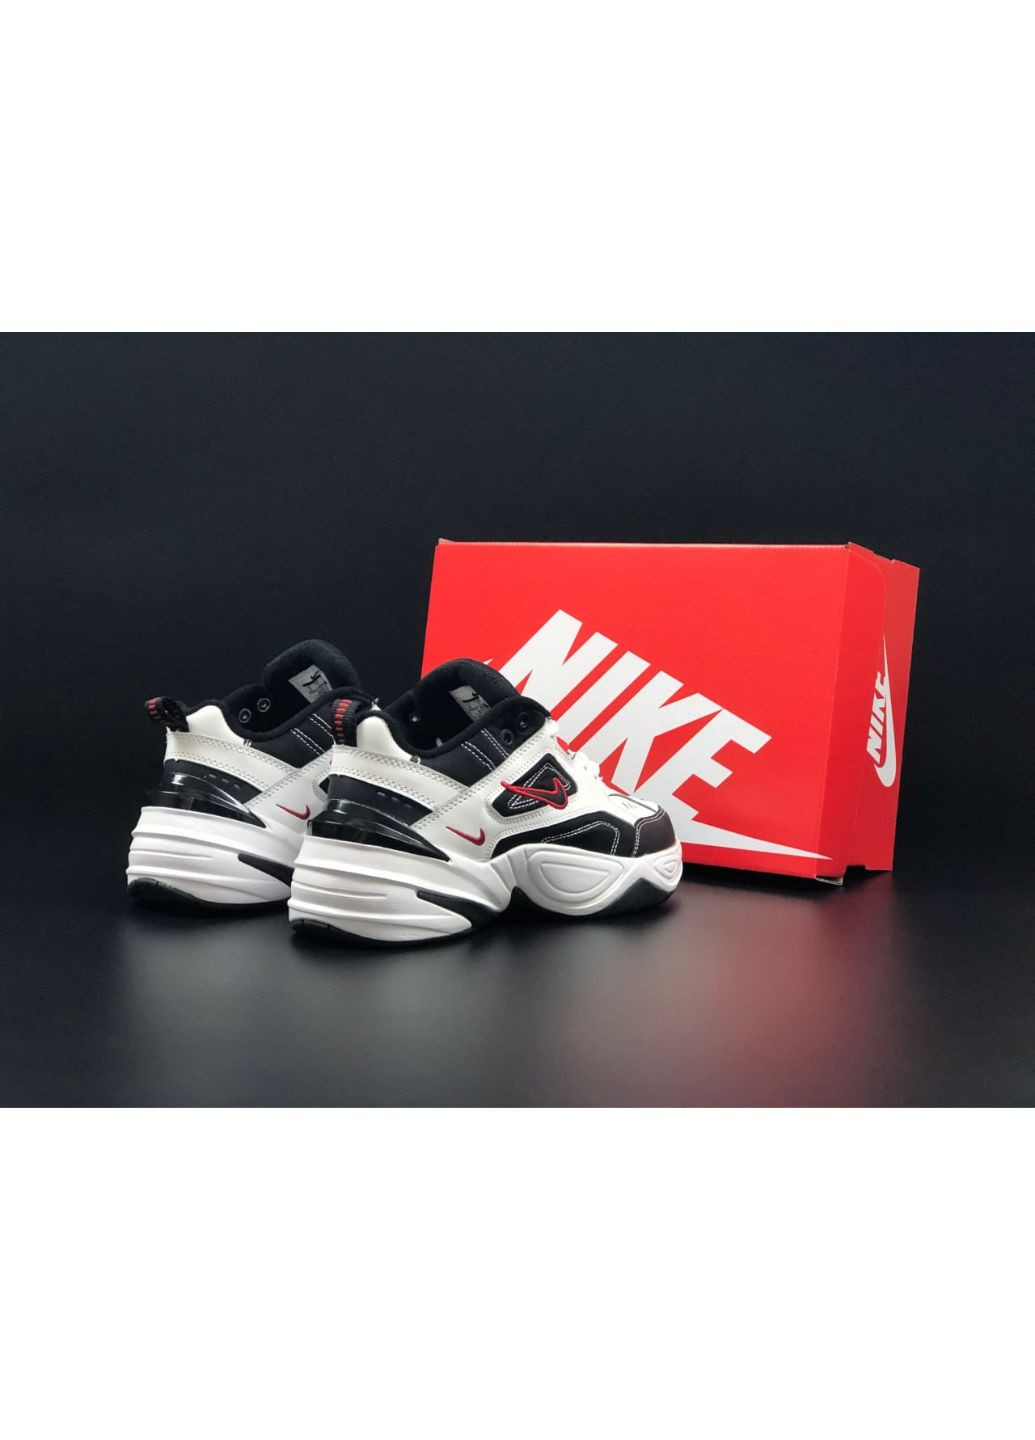 Черно-белые демисезонные мужские кроссовки белые с черным\красным «no name» Nike M2k Tekno